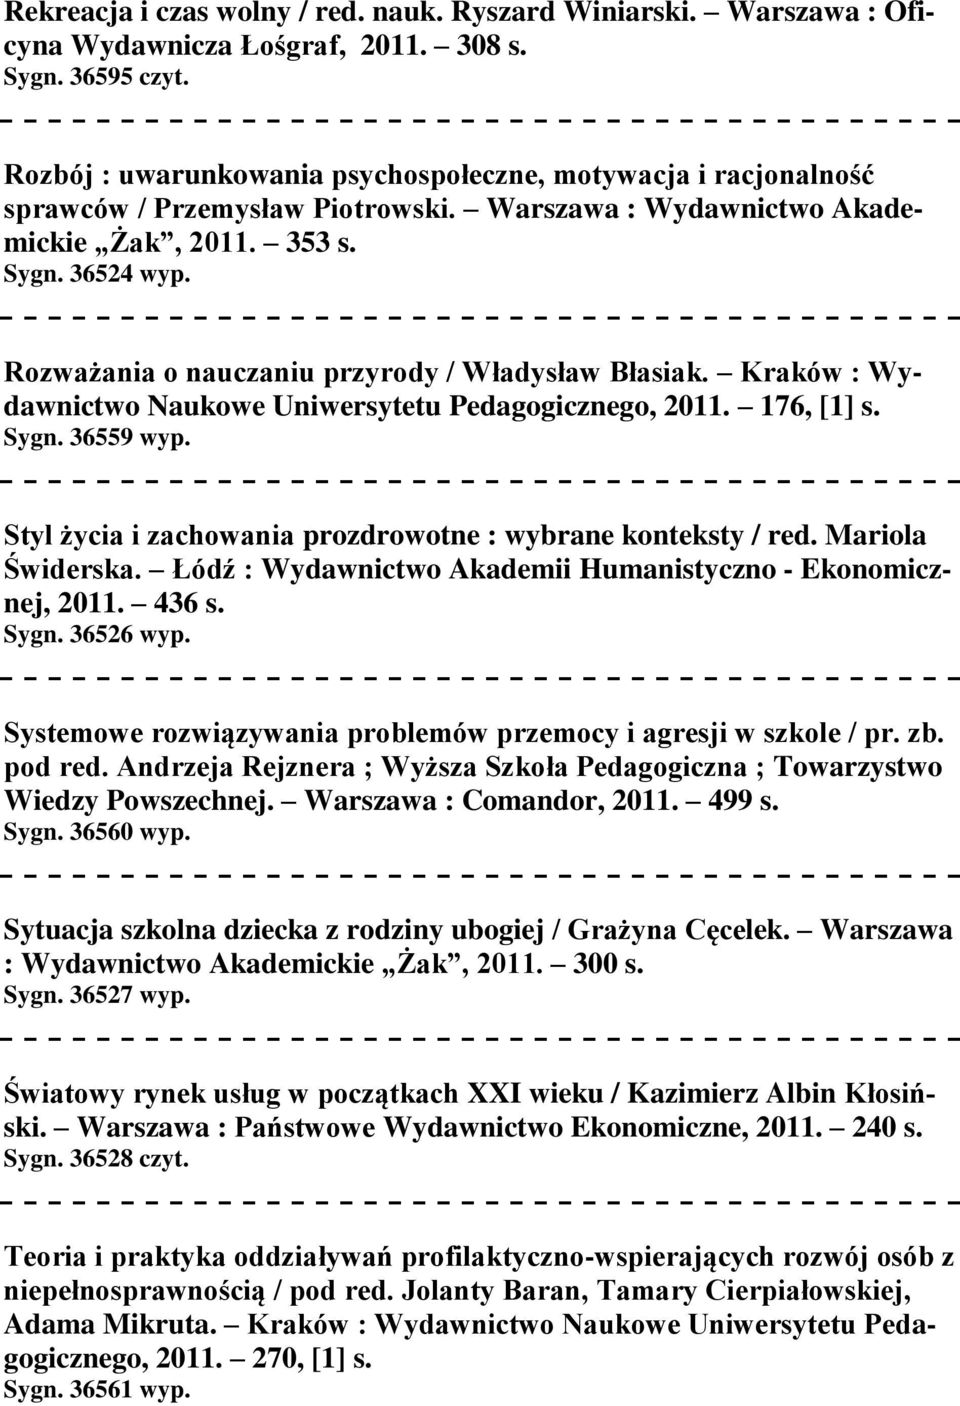 Rozważania o nauczaniu przyrody / Władysław Błasiak. Kraków : Wydawnictwo Naukowe Uniwersytetu Pedagogicznego, 2011. 176, [1] s. Sygn. 36559 wyp.